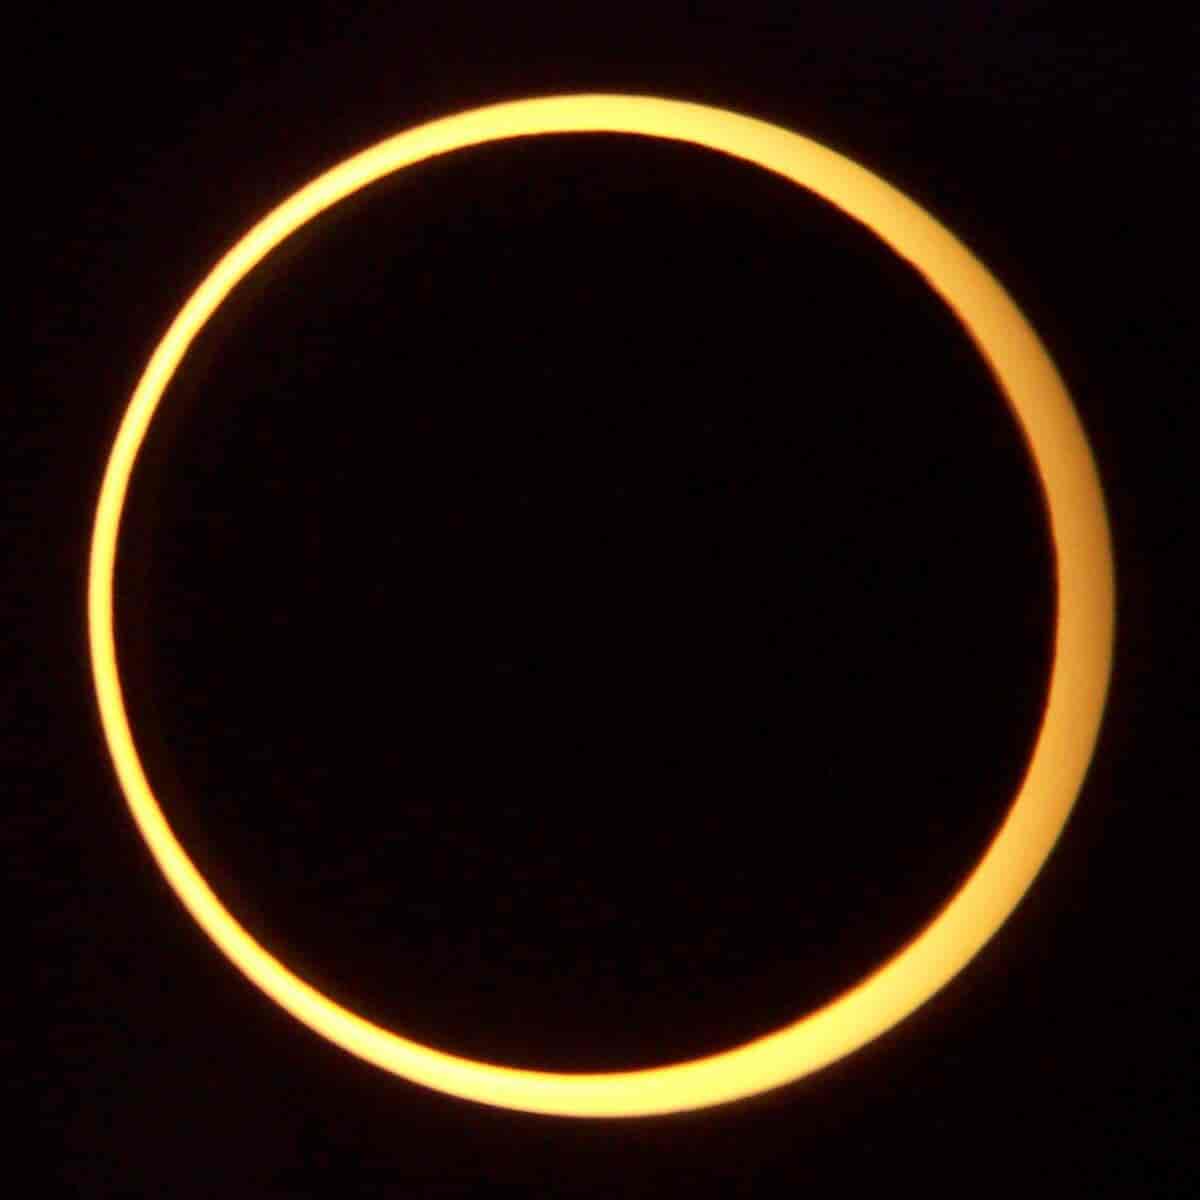 Svart himmel med en sort måne på. Den sorte månen er omgitt av en gullfarget ring som er sola. 